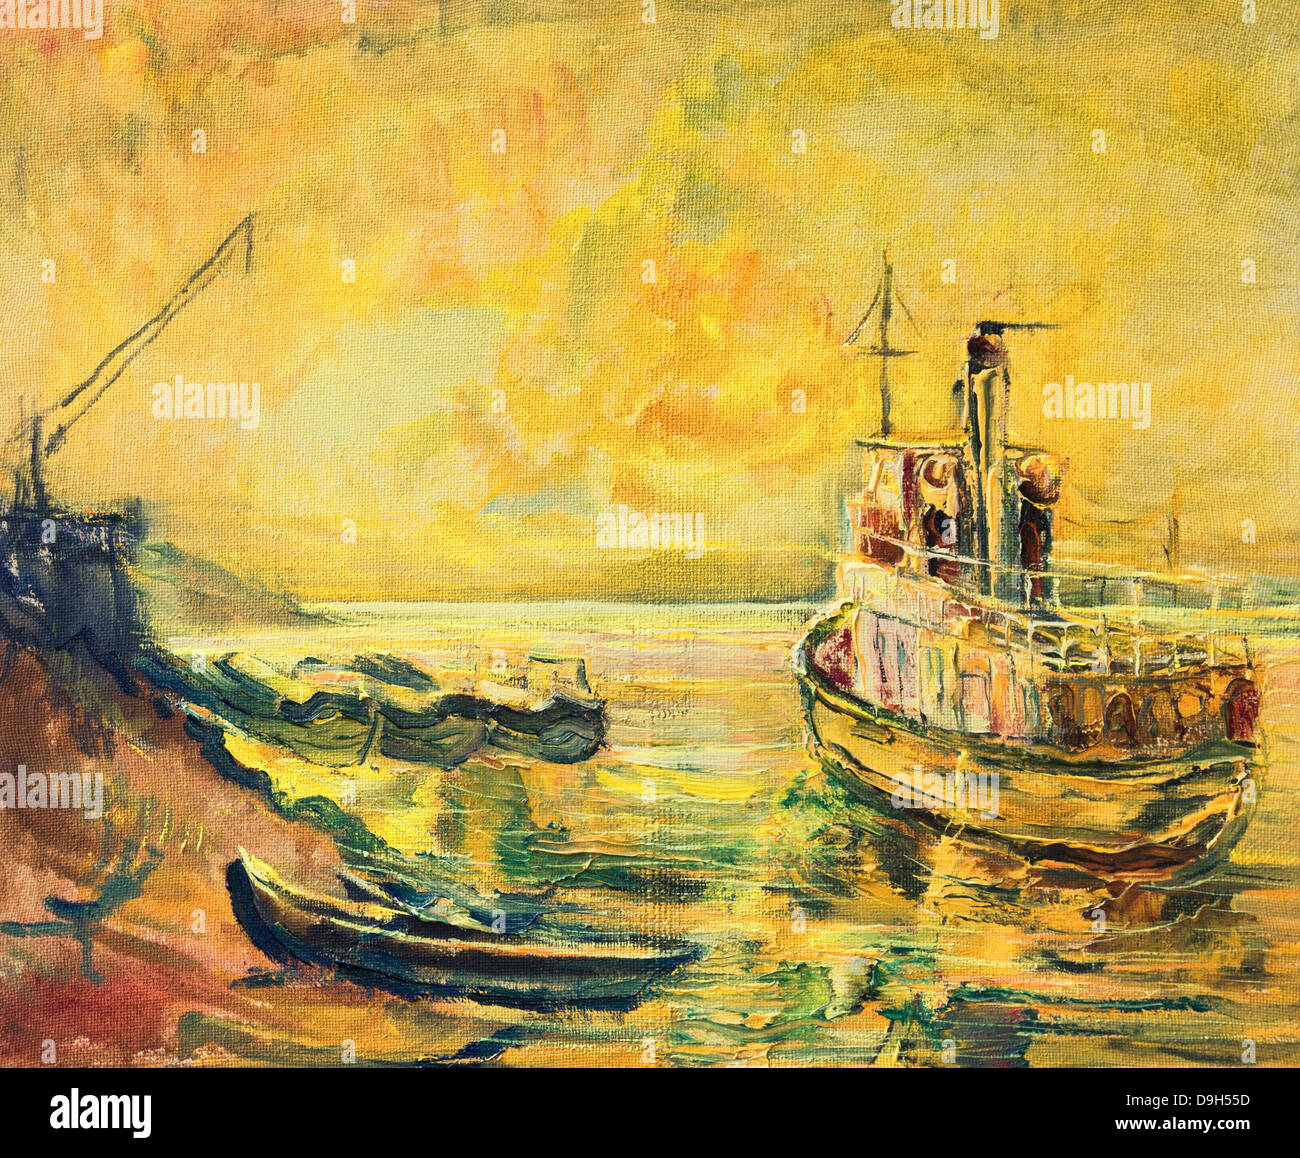 Un dipinto ad olio su tela di una bellissima alba sul fiume Danubio con una vecchia nave da pesca e una barca ancorata al litorale. Foto Stock